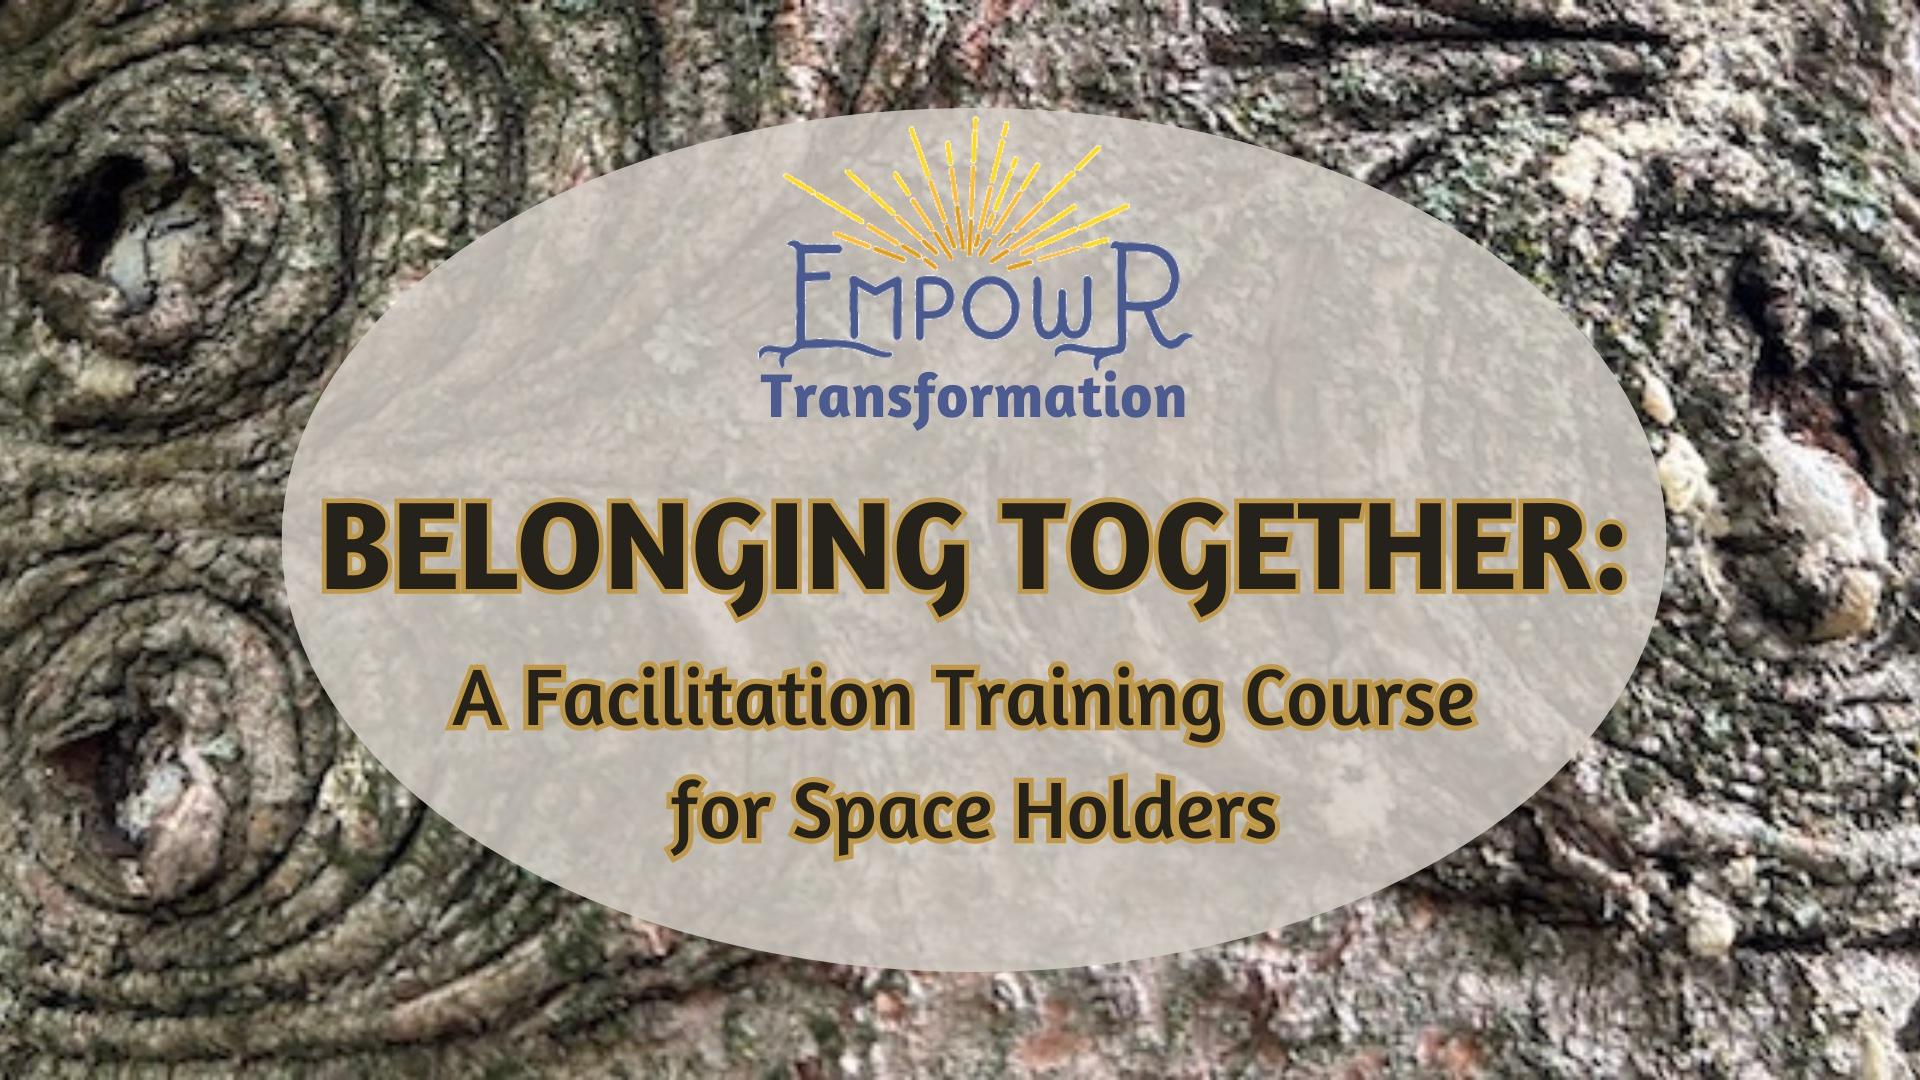 Facilitation Training Course